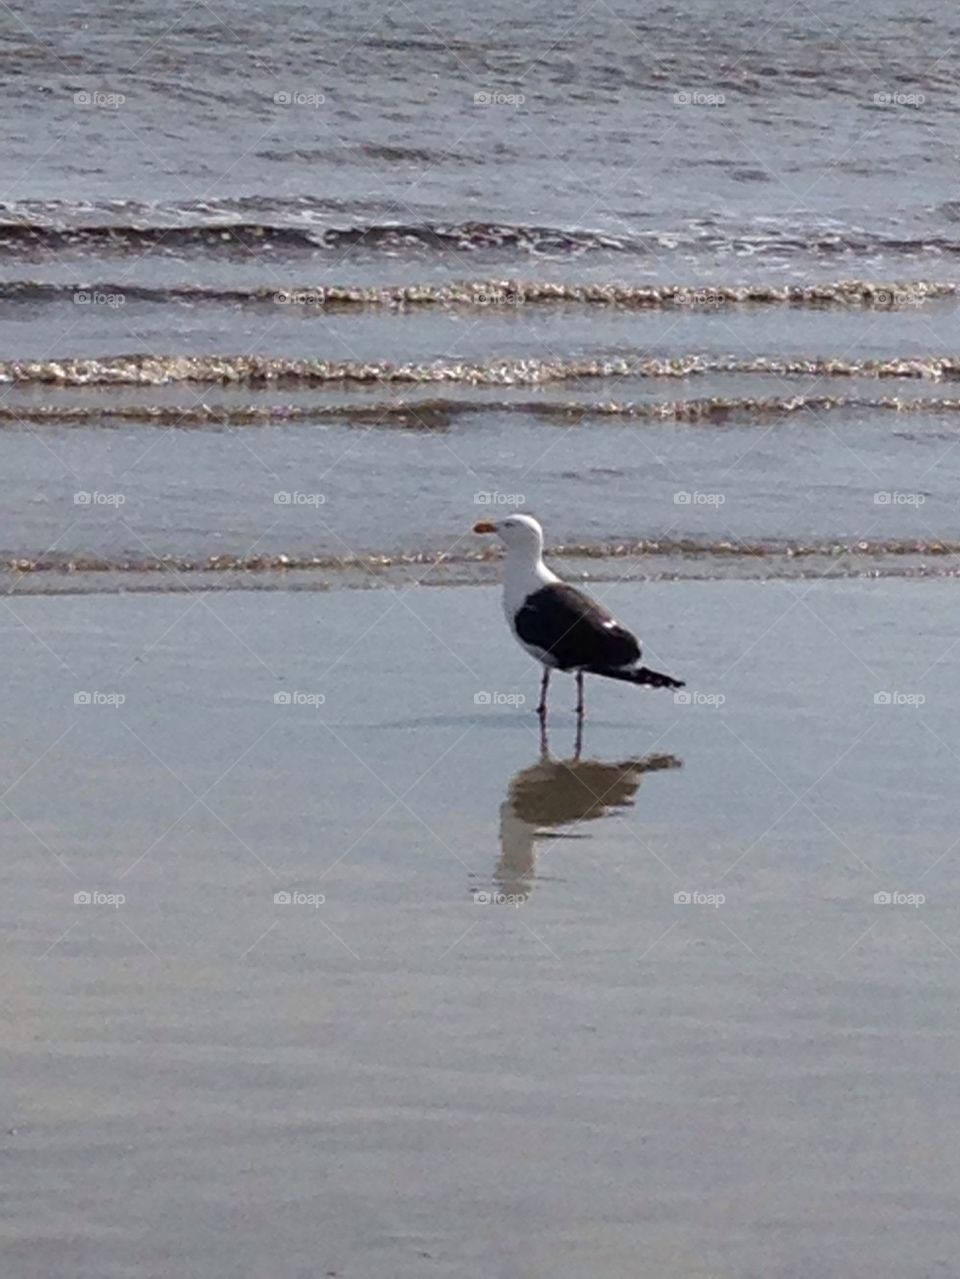 Bird on the beach